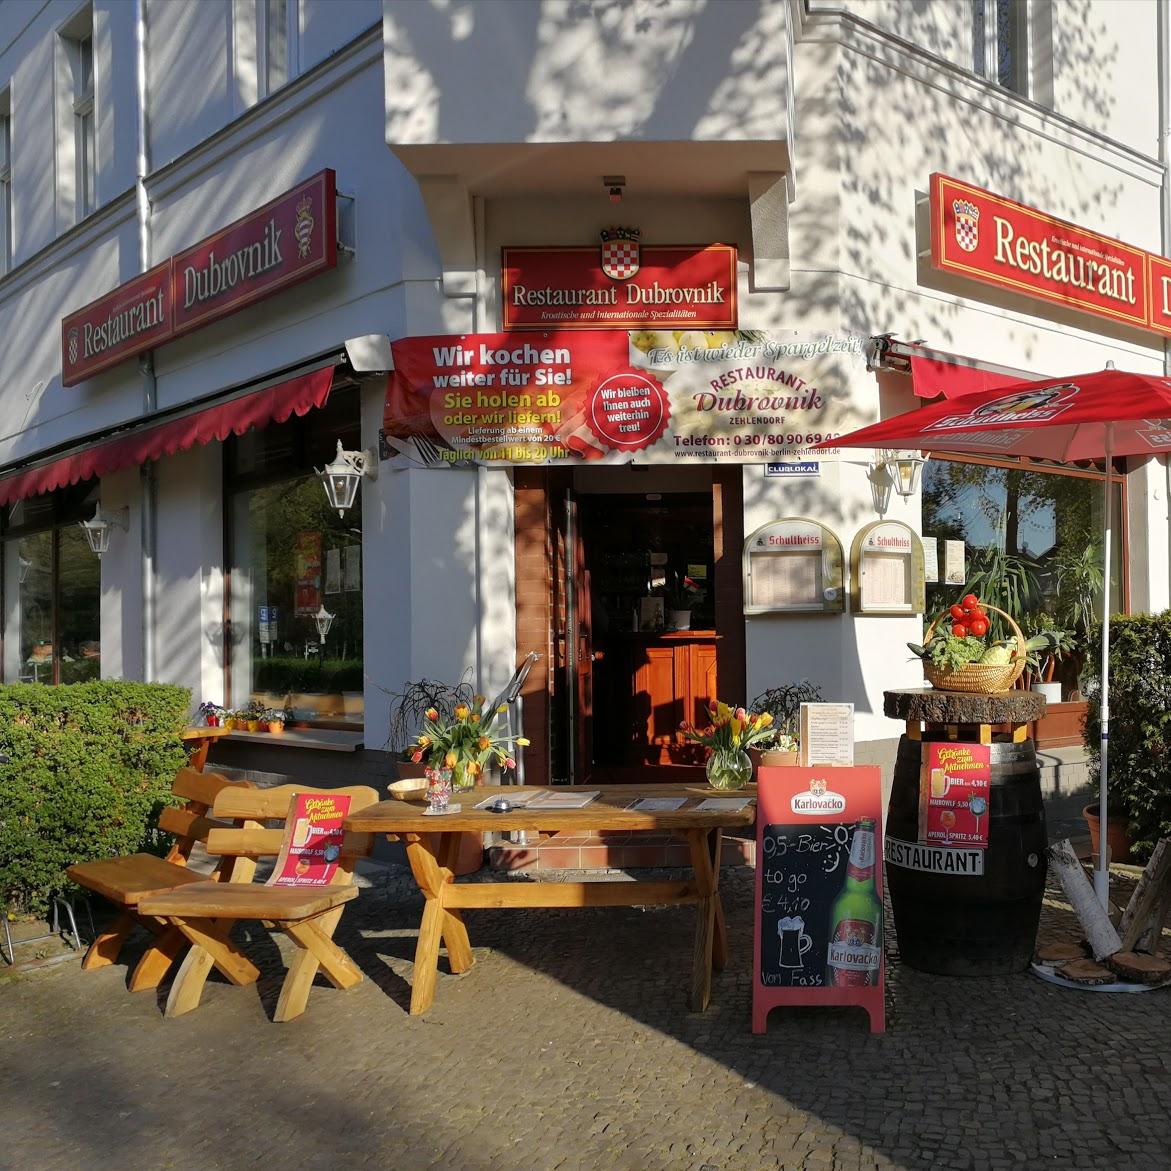 Restaurant "Restaurant Dubrovnik Berlin Zehlendorf" in  Berlin